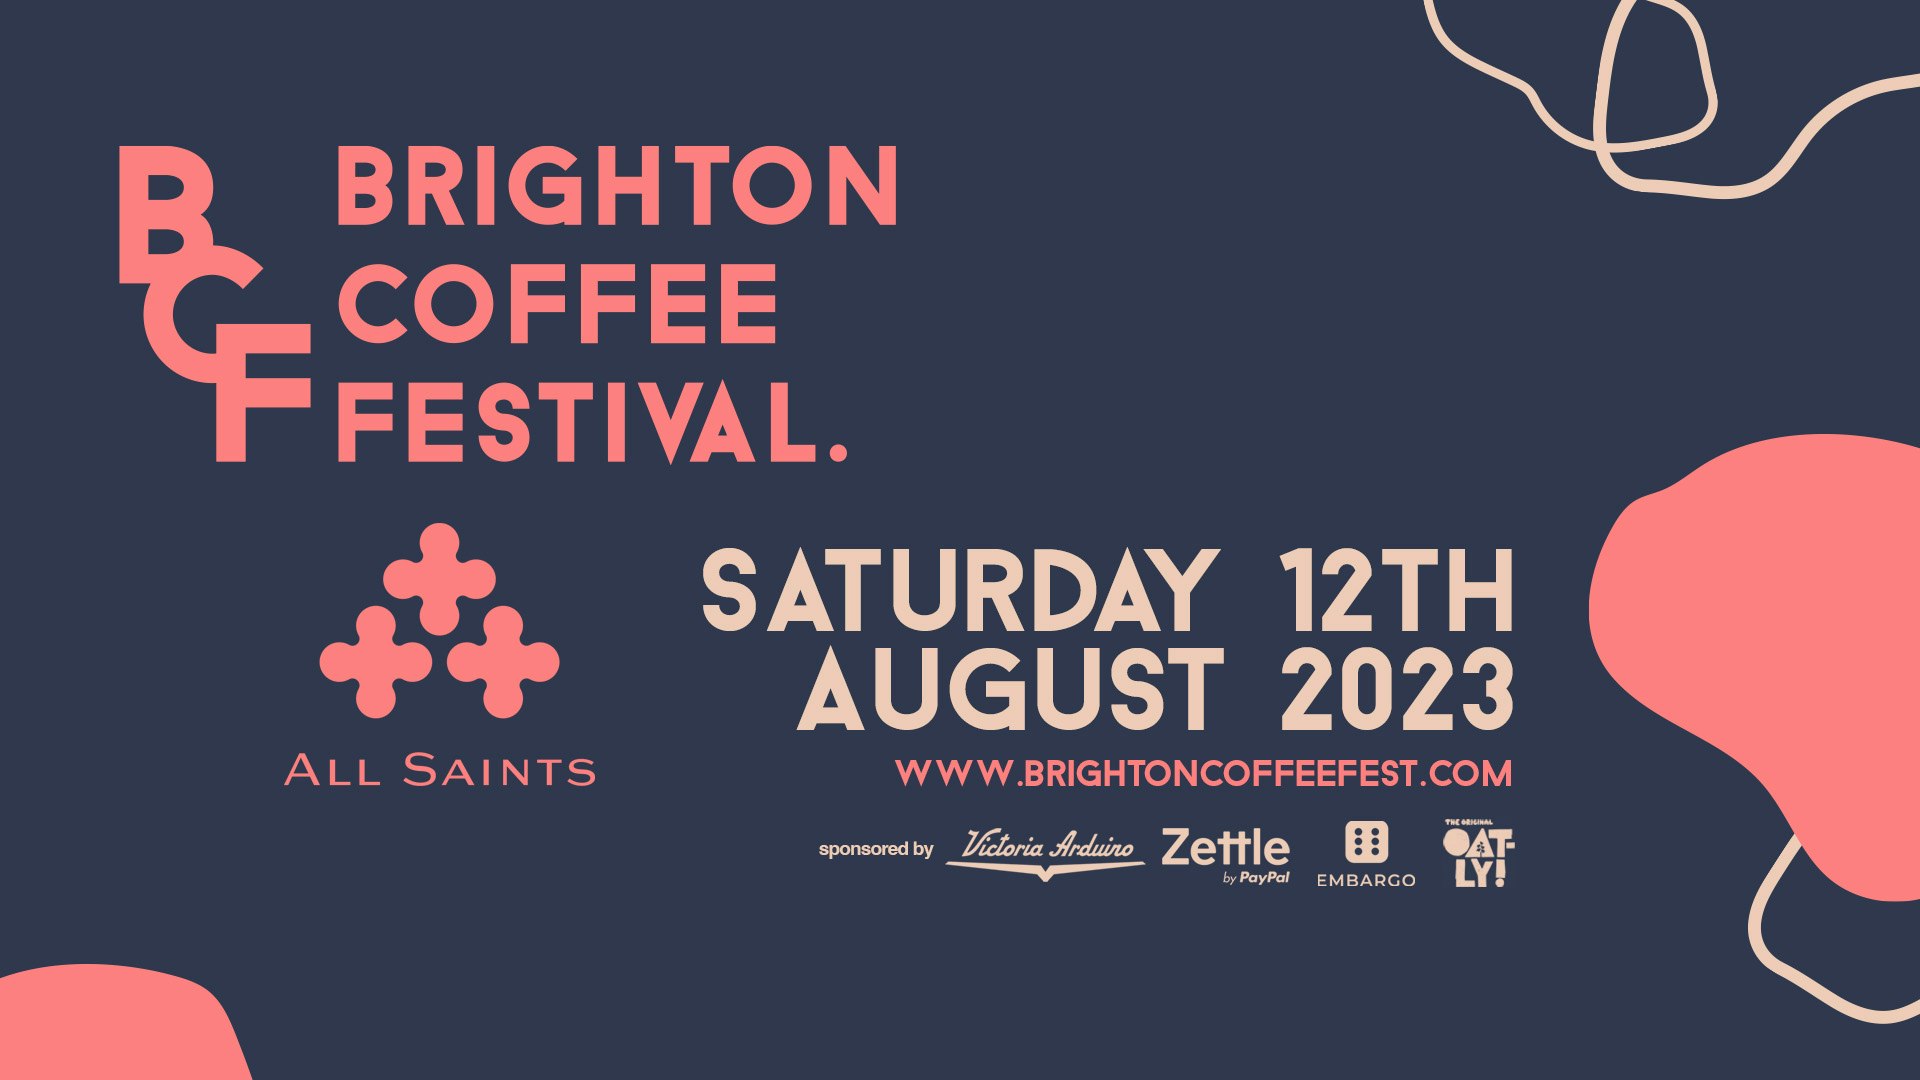 Brighton Coffee Festival 2023